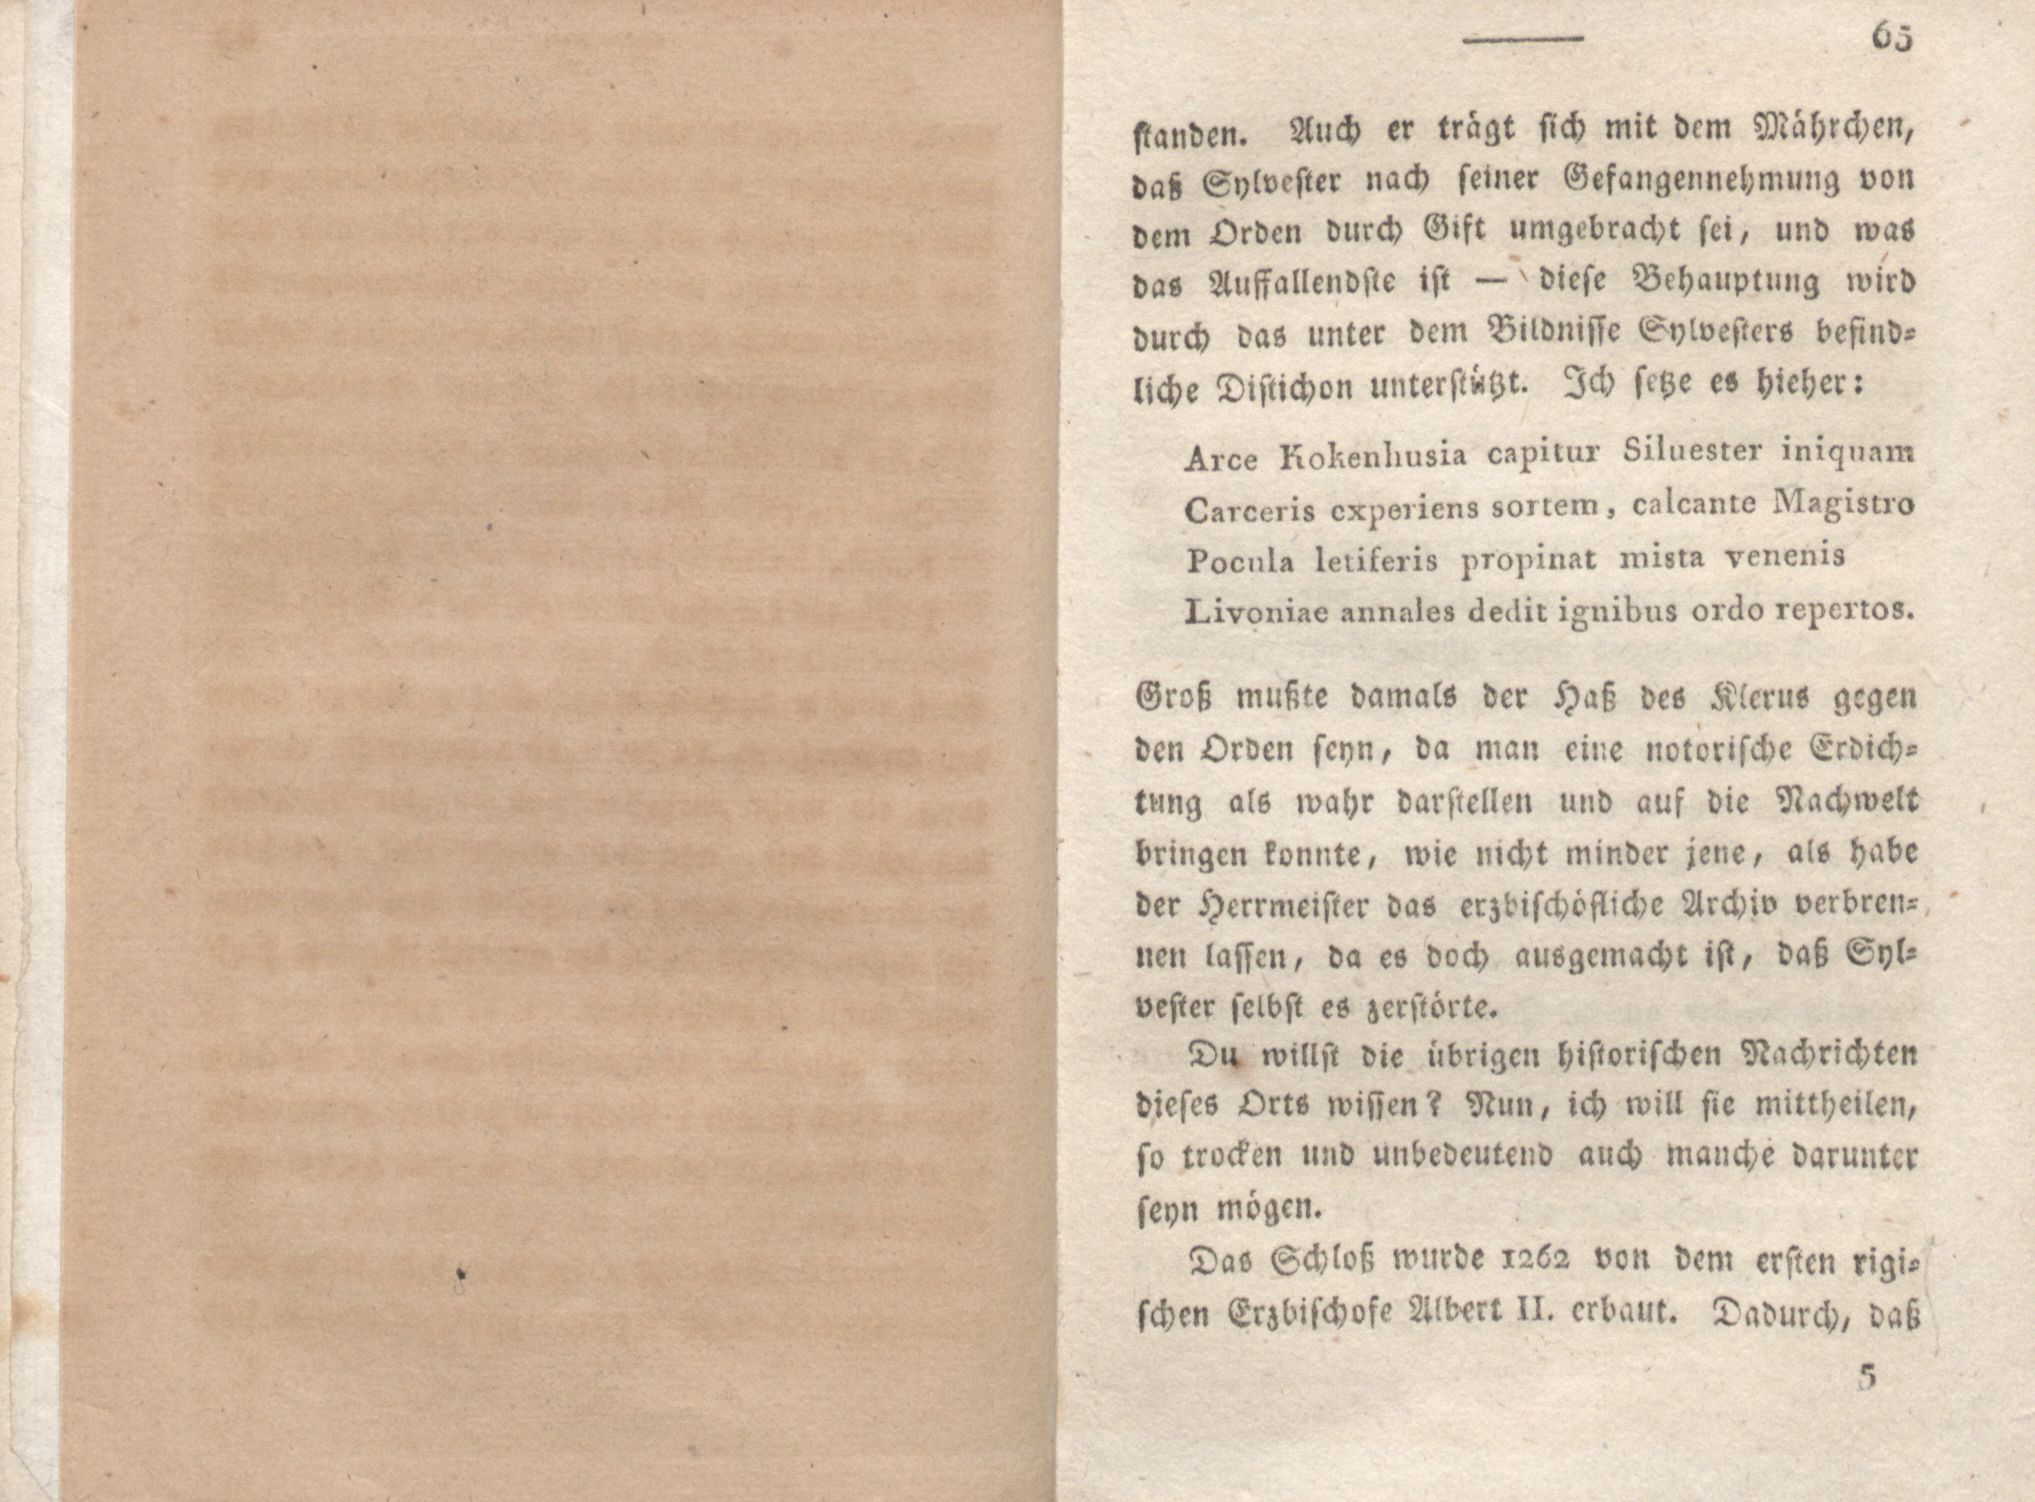 Livona [2] (1815) | 48. (65) Main body of text